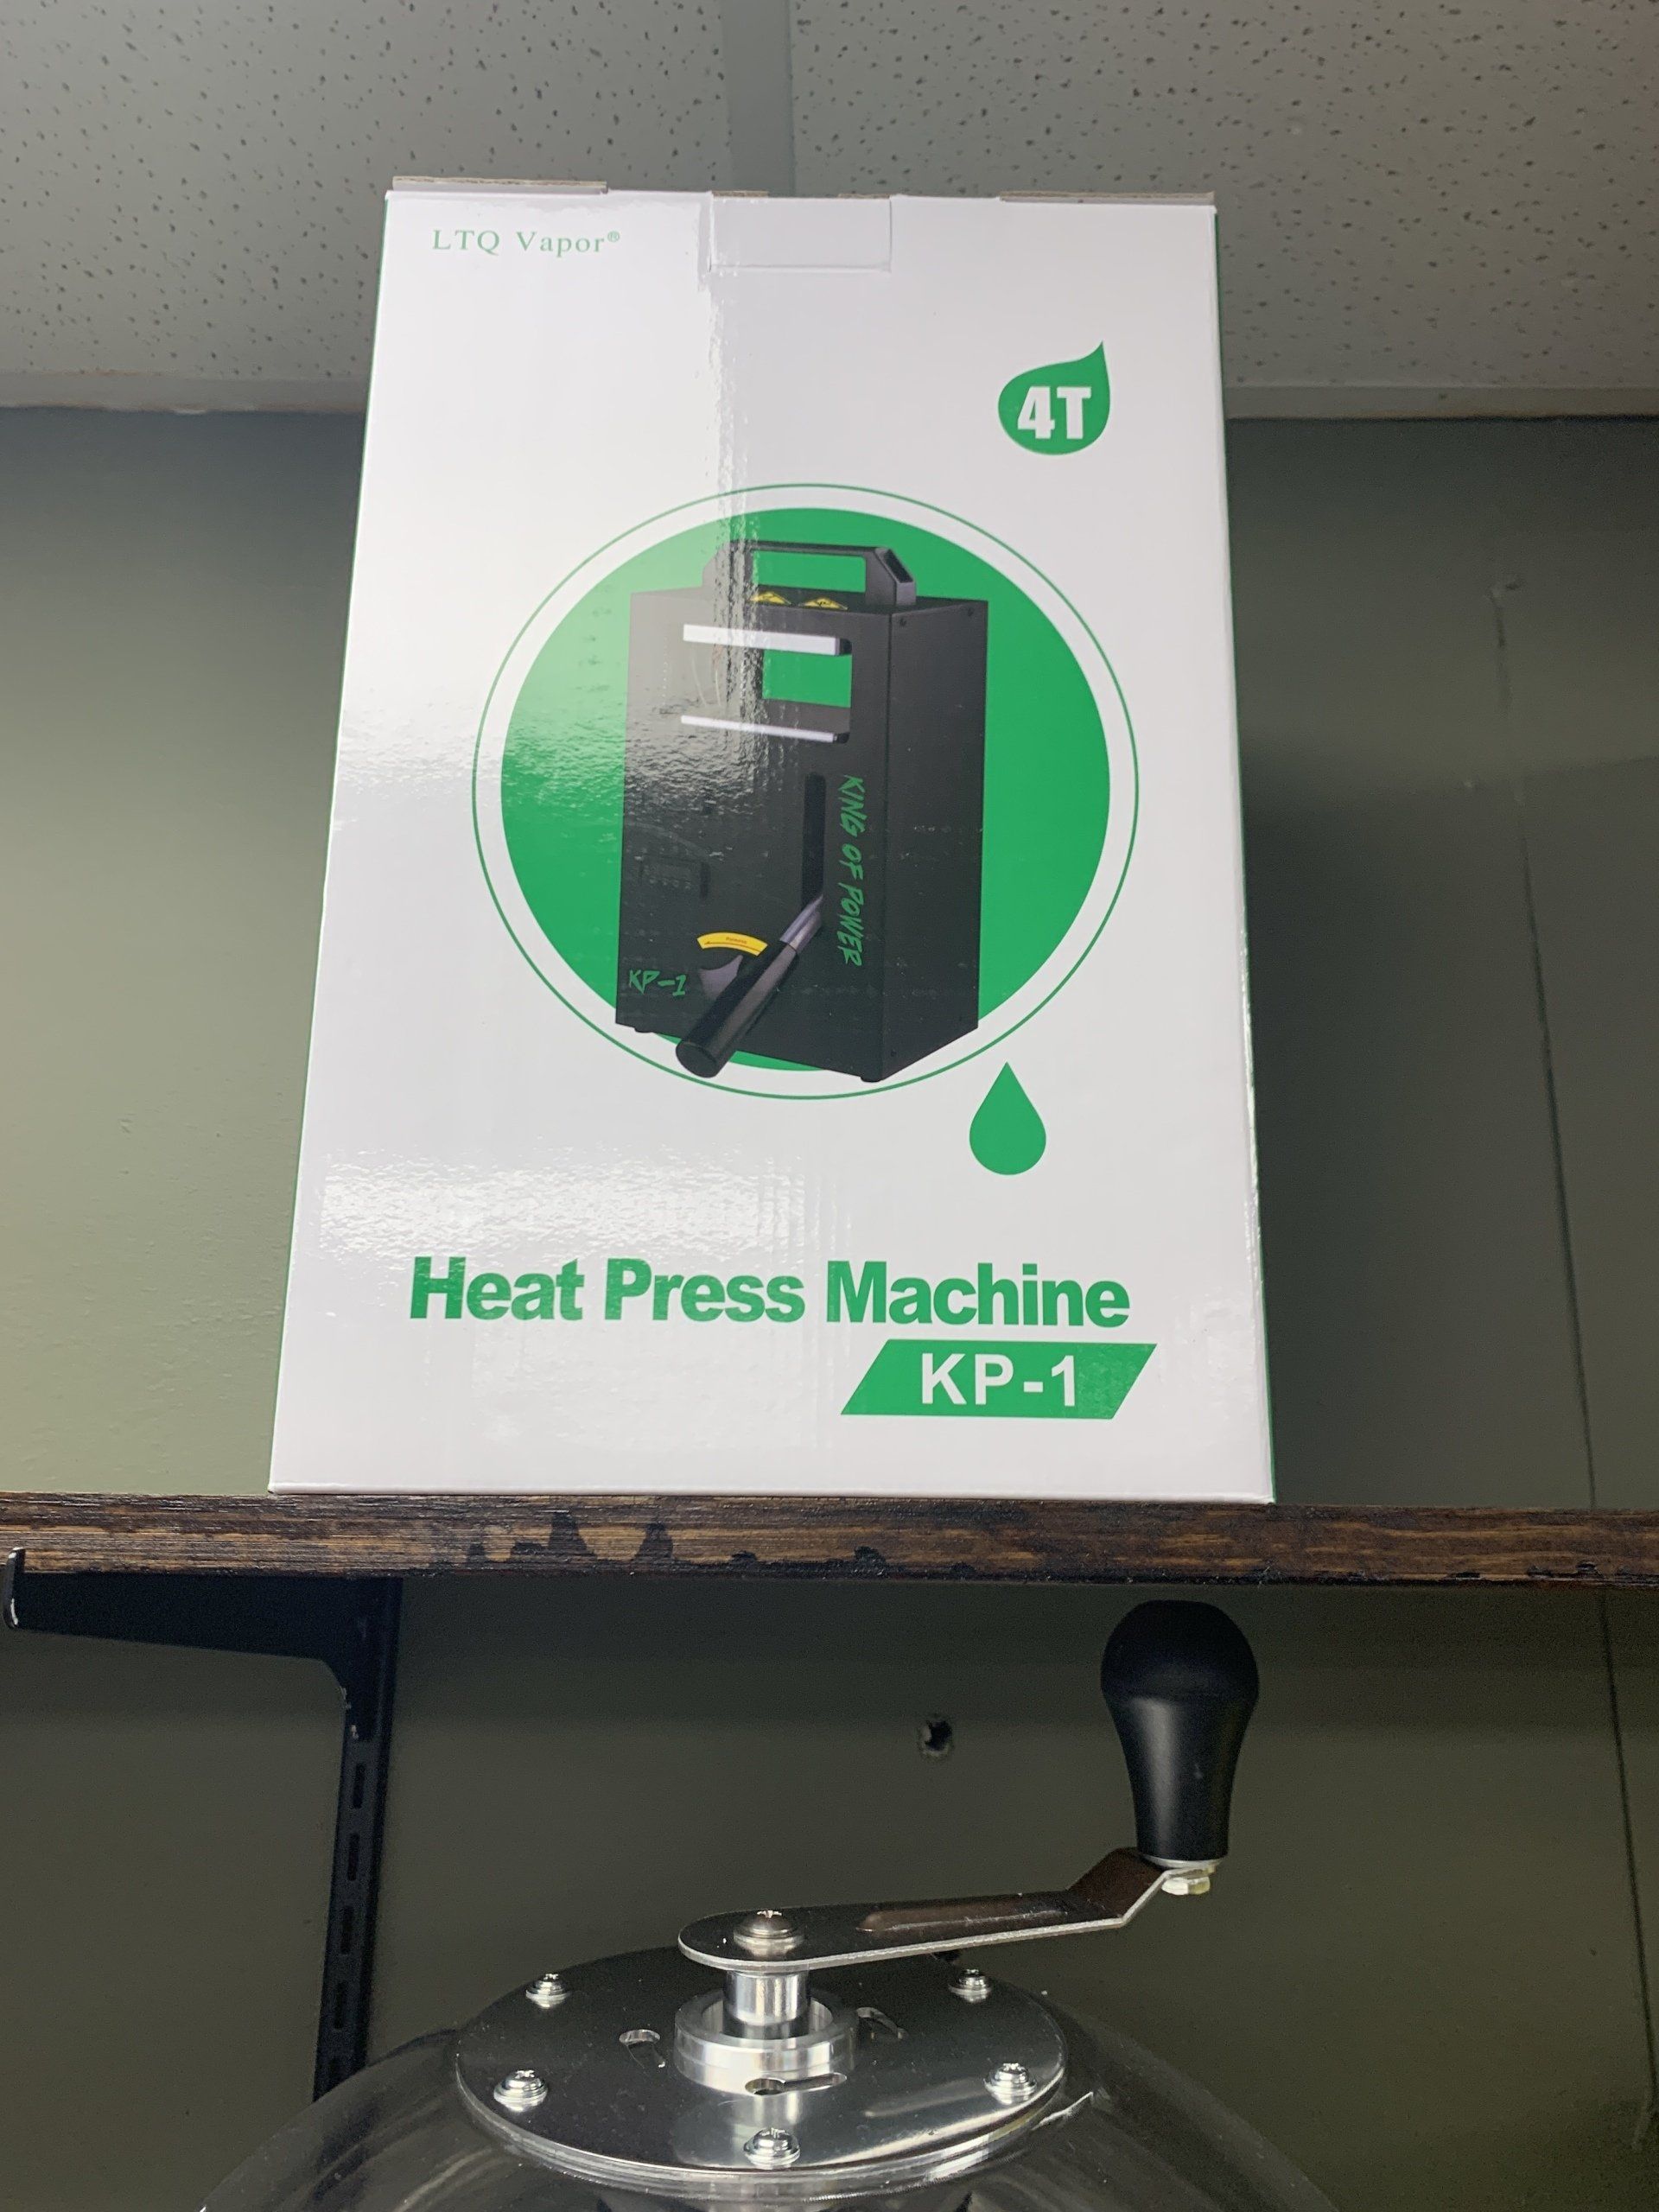 Heat Press Machine KP-1